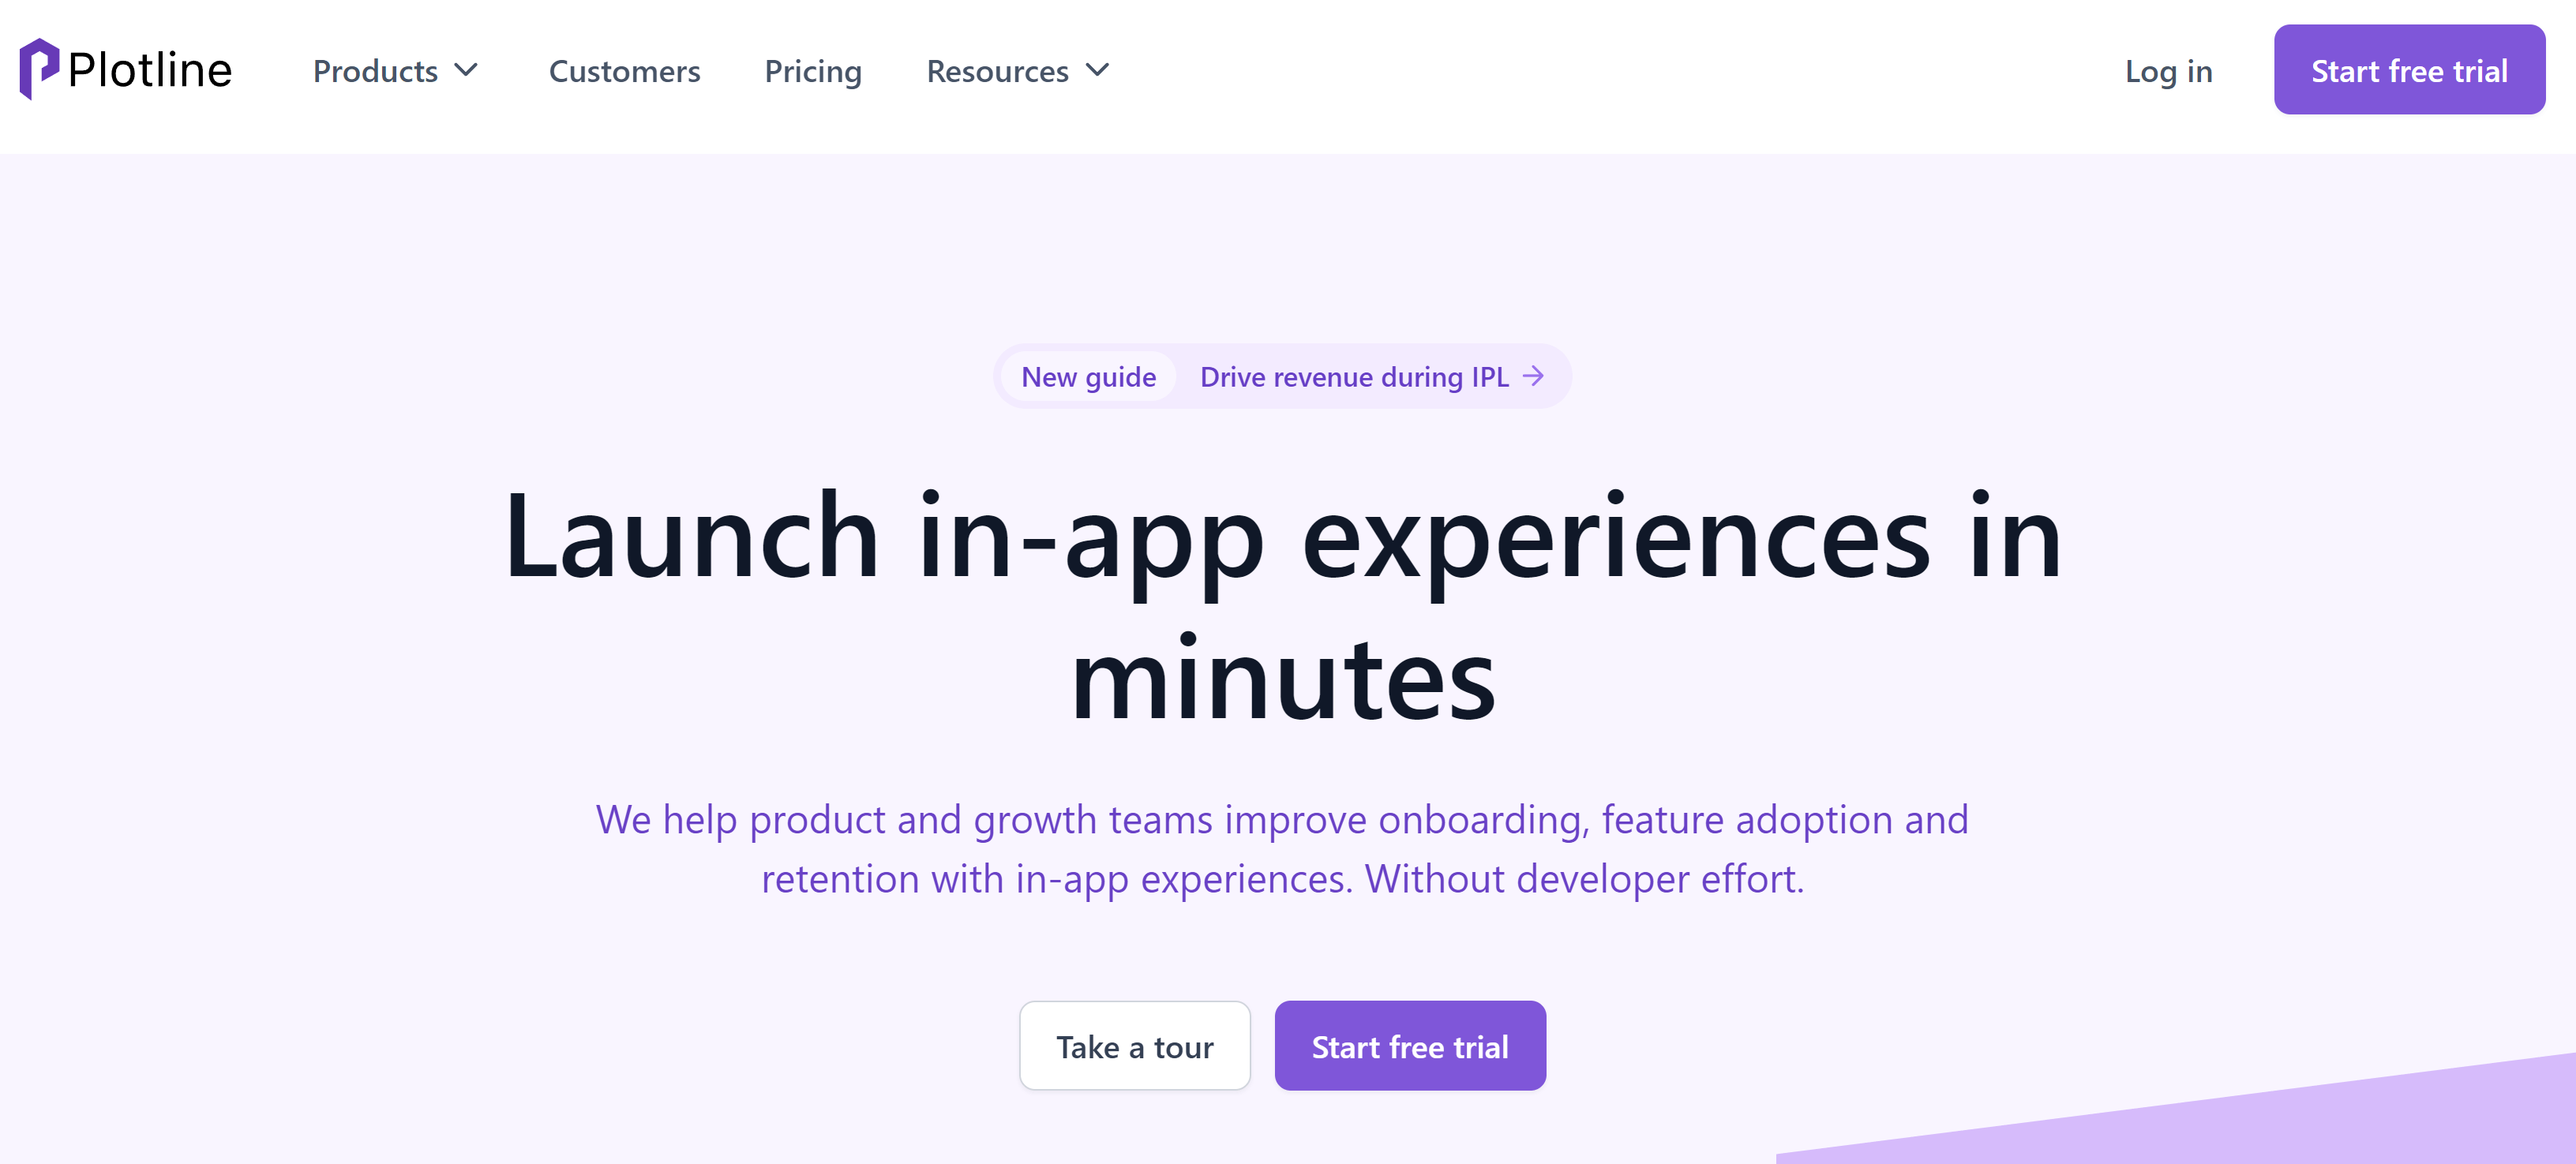 App Experience Platform